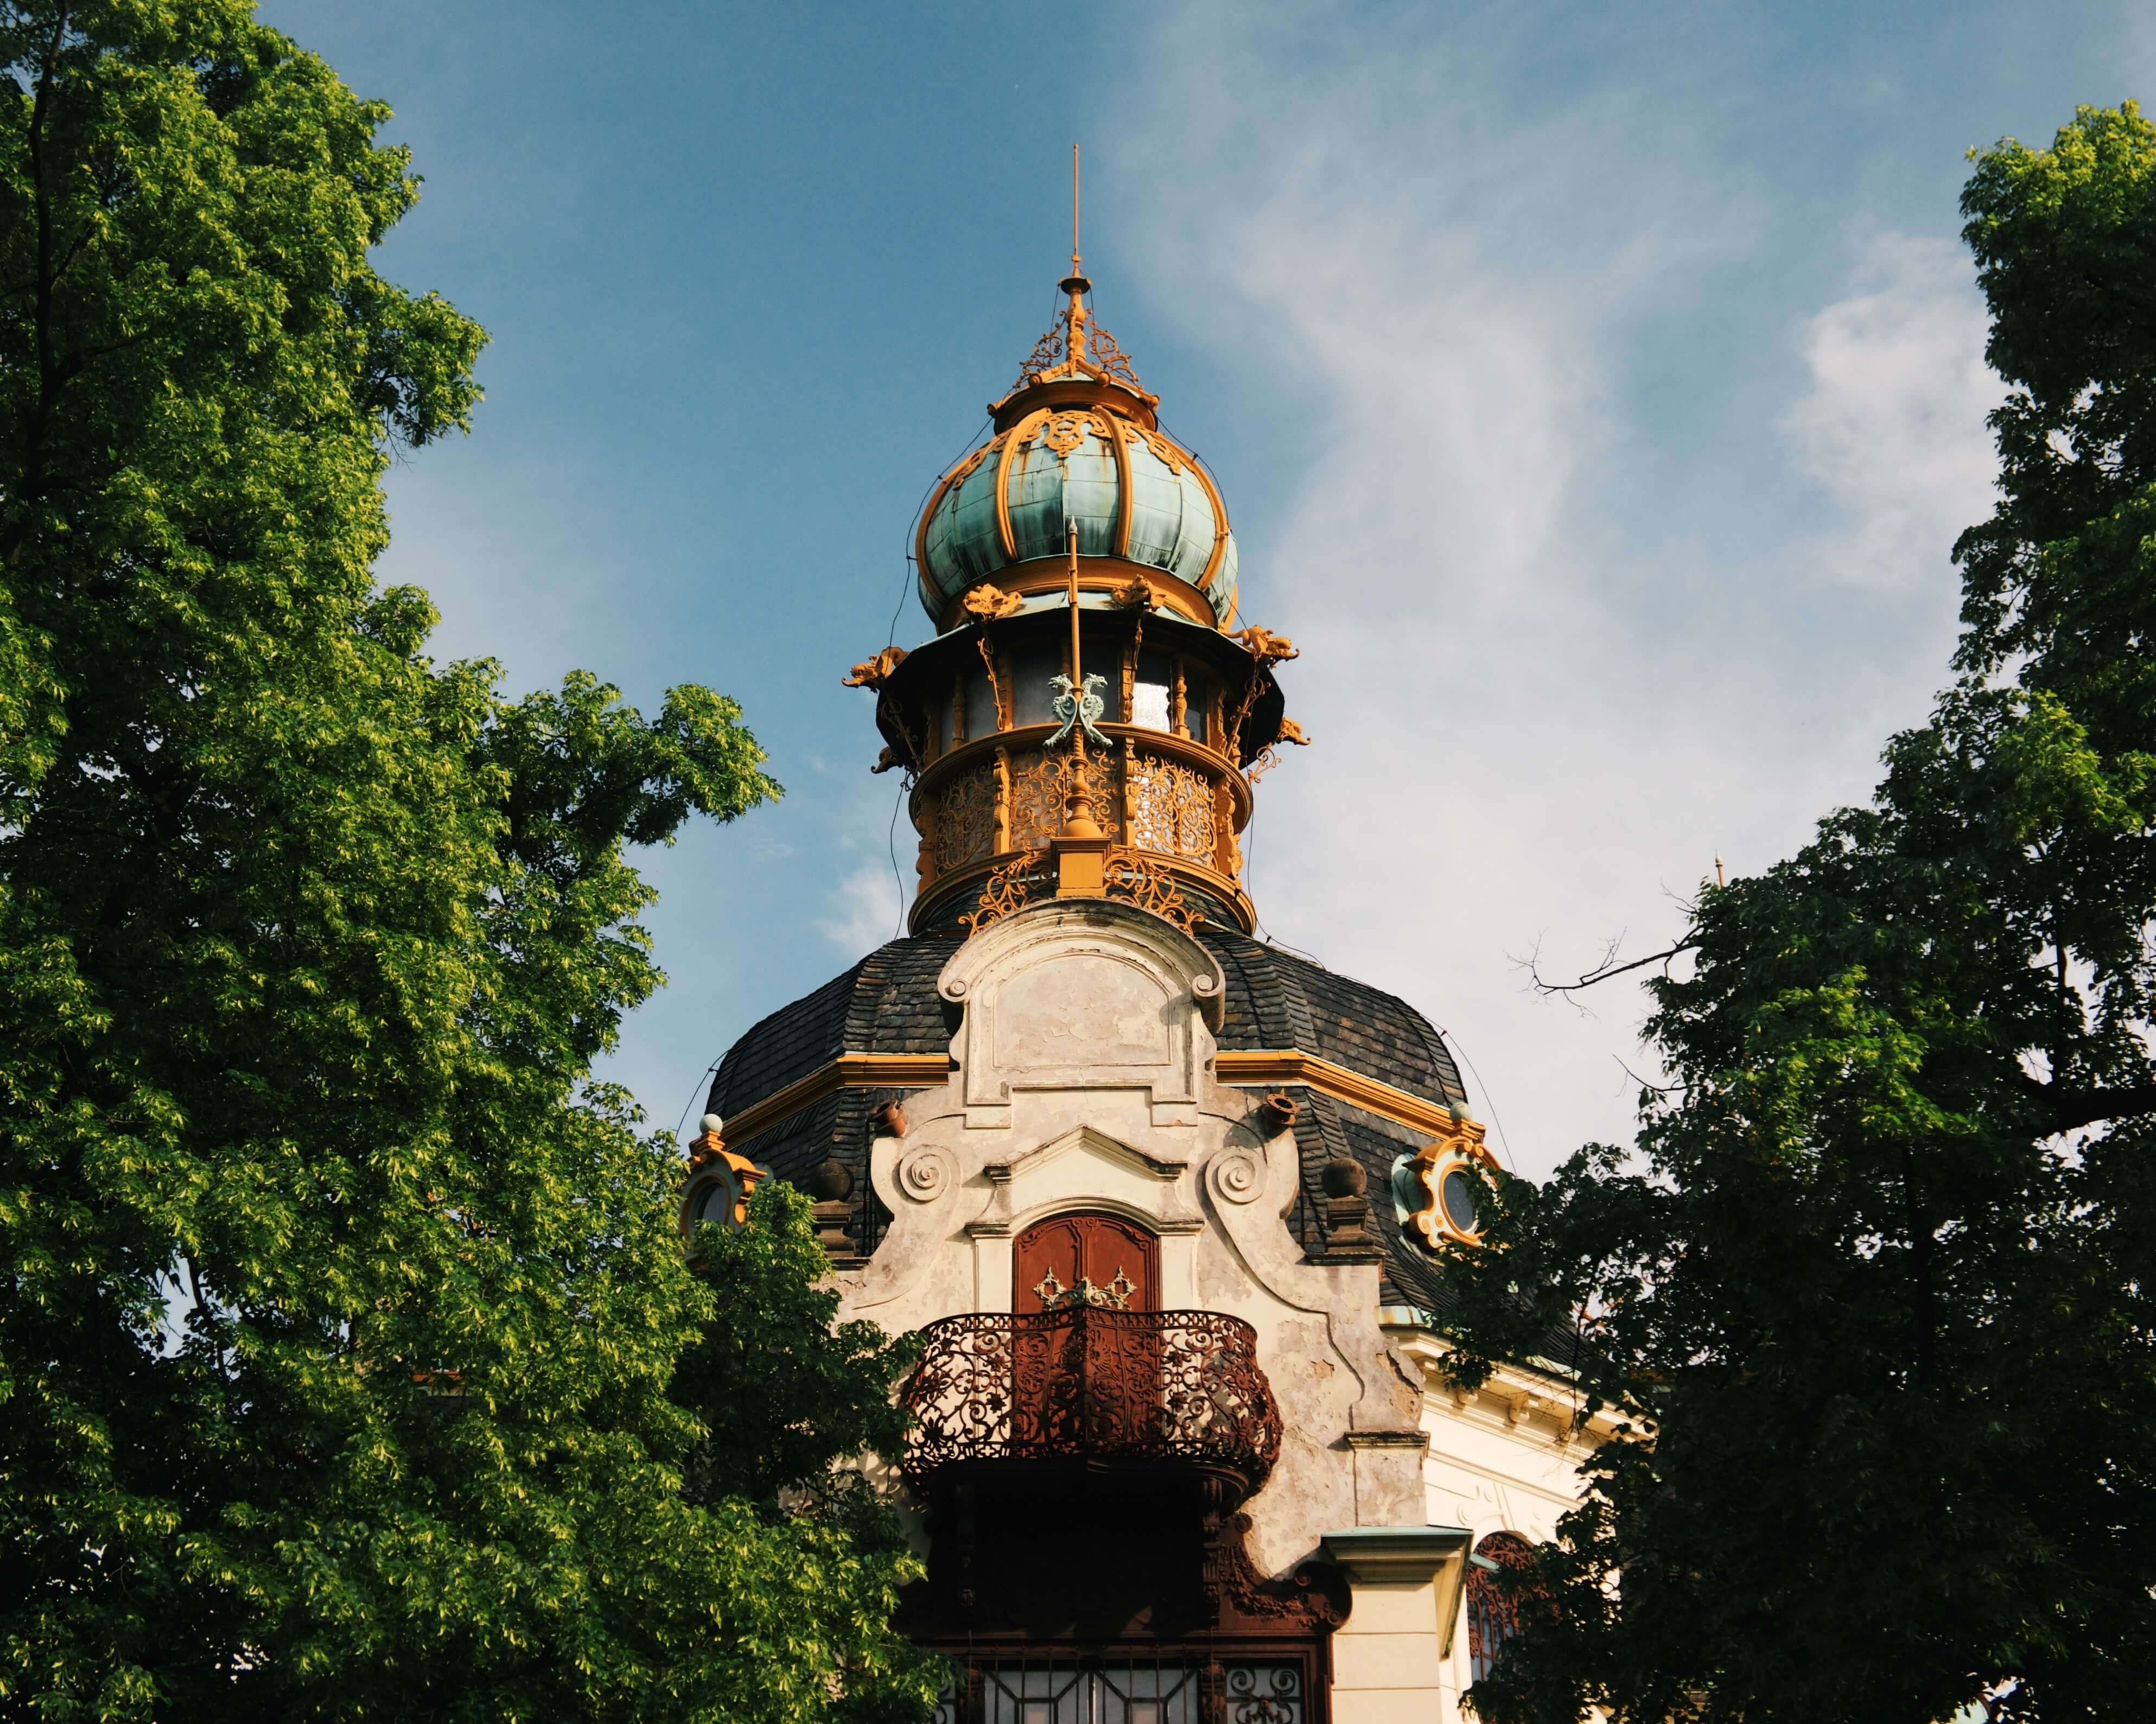 Hanavský pavilon, Praha. Photo by Fernando Lavin on Unsplash